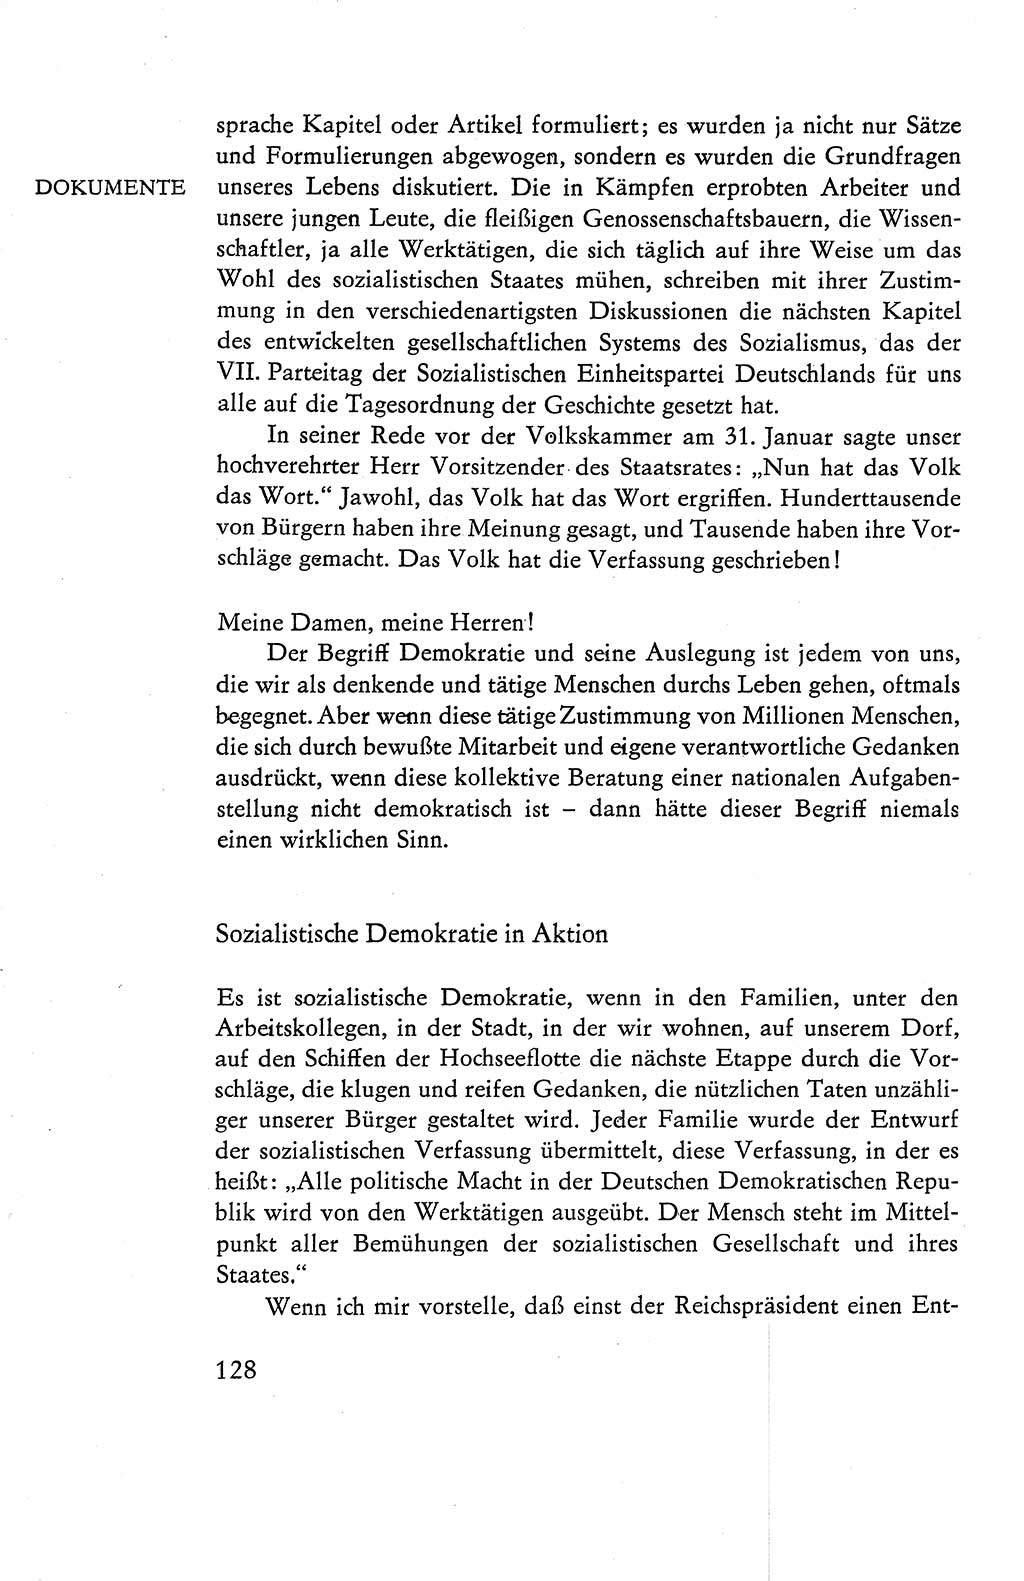 Verfassung der Deutschen Demokratischen Republik (DDR), Dokumente, Kommentar 1969, Band 1, Seite 128 (Verf. DDR Dok. Komm. 1969, Bd. 1, S. 128)